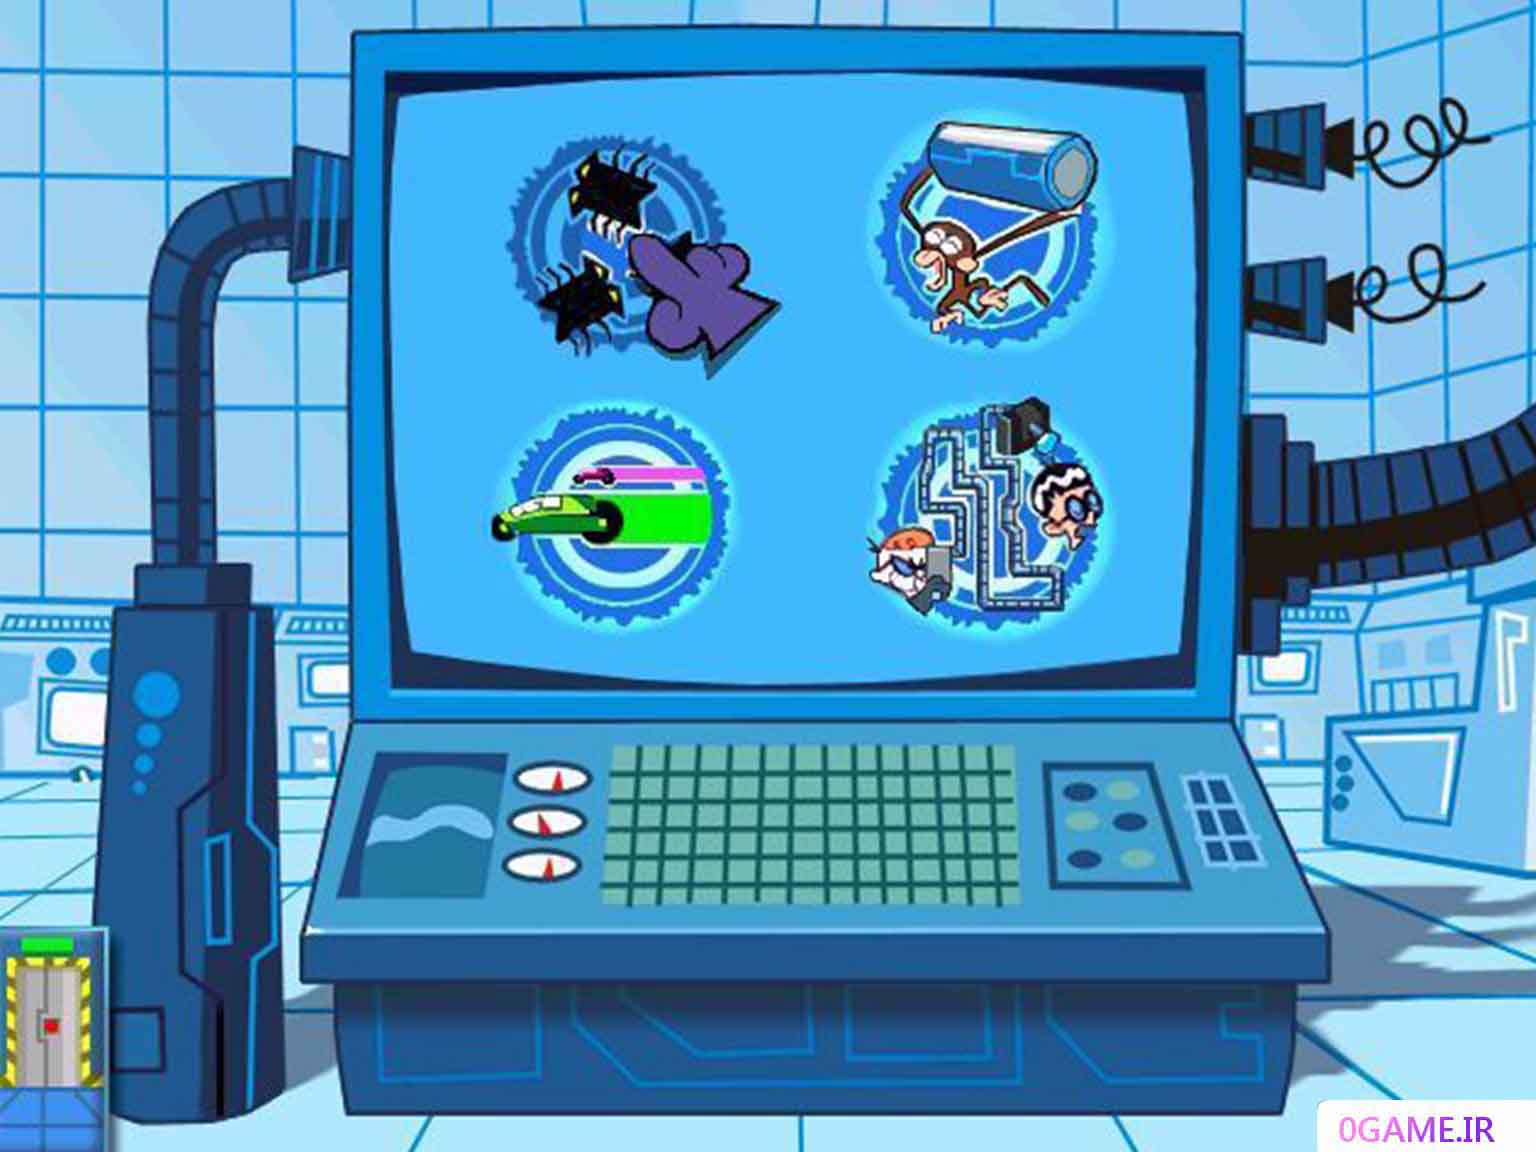 دانلود بازی آزمایشگاه دکستر (Dexter's Laboratory: Science Ain't Fair) نسخه کامل برای کامپیوتر